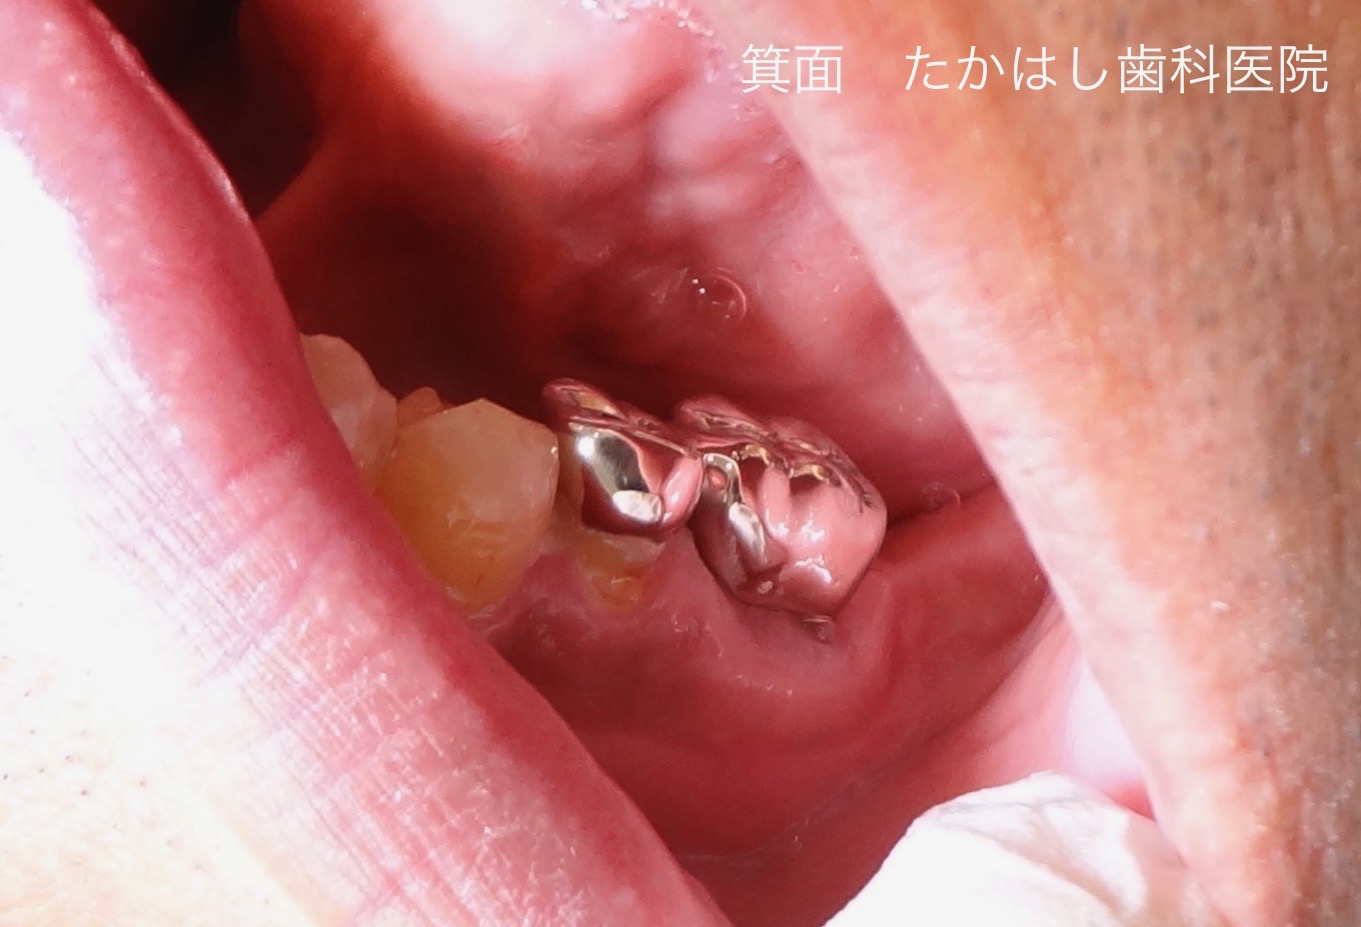 小臼歯と大臼歯を、銀歯で連結固定した写真